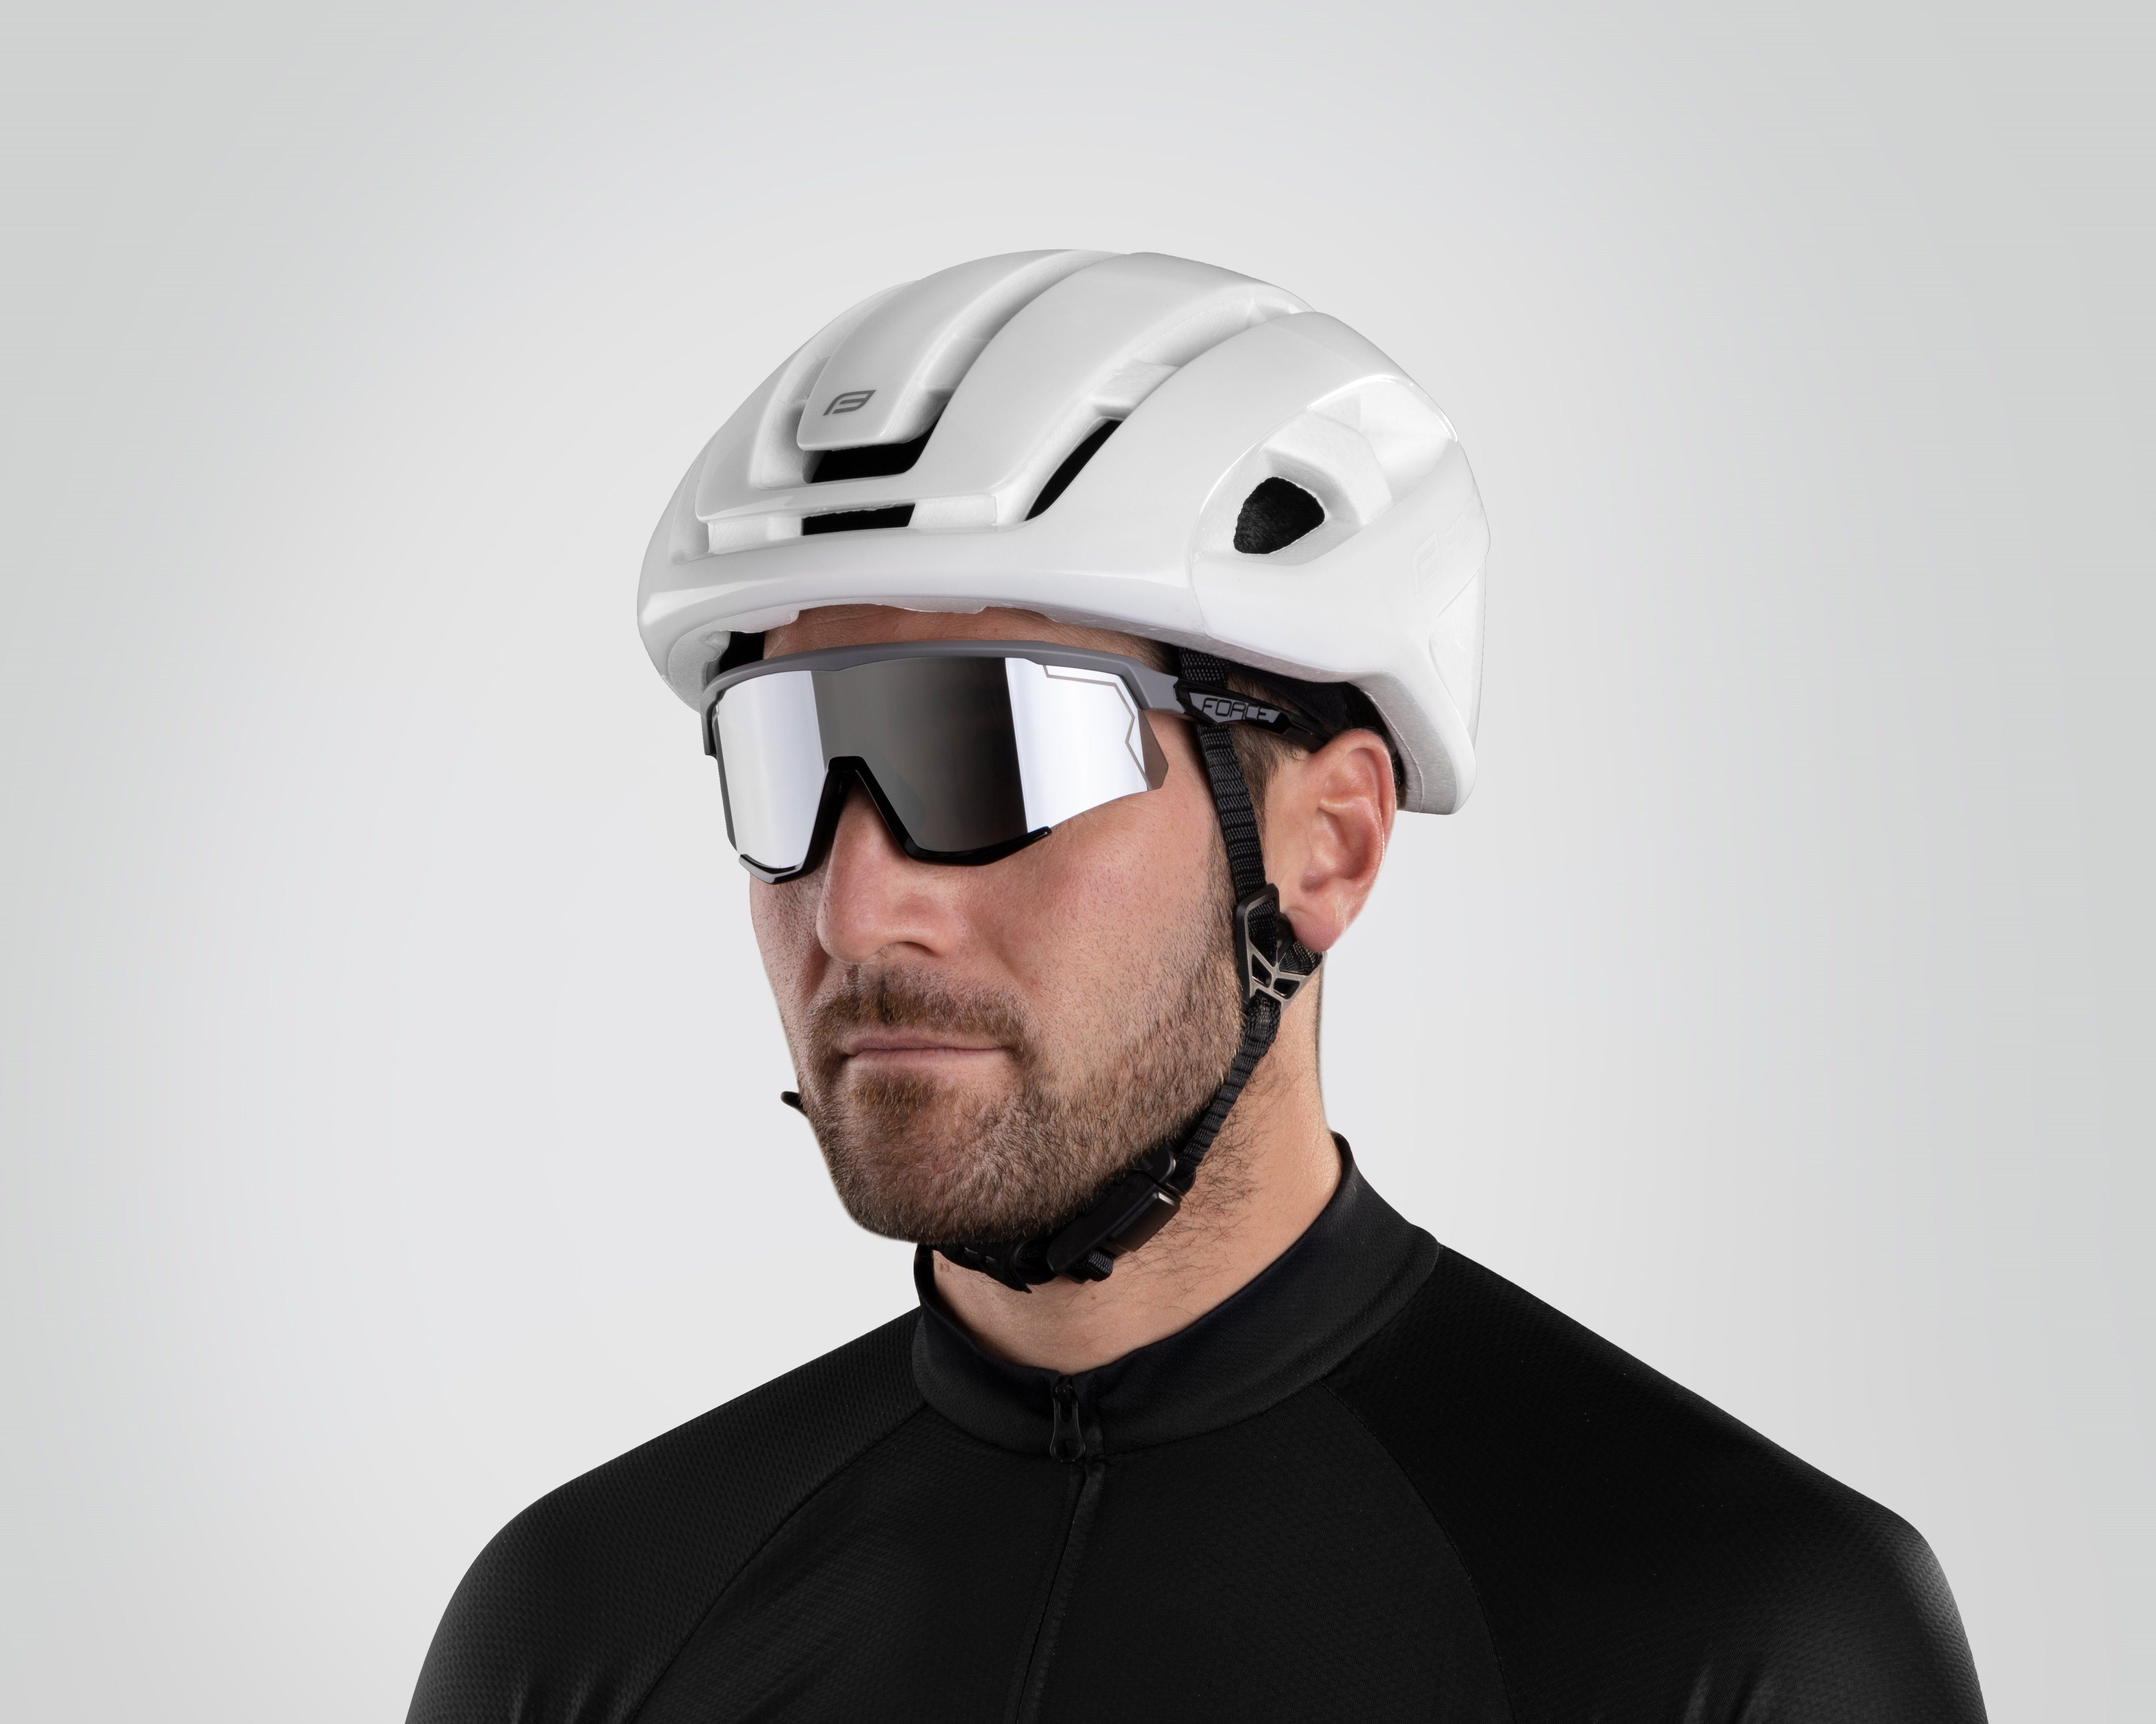 FORCE Fahrradbrille Sonnenbrille gespiegeltes FORCE grau-schwarz SONIC Glas